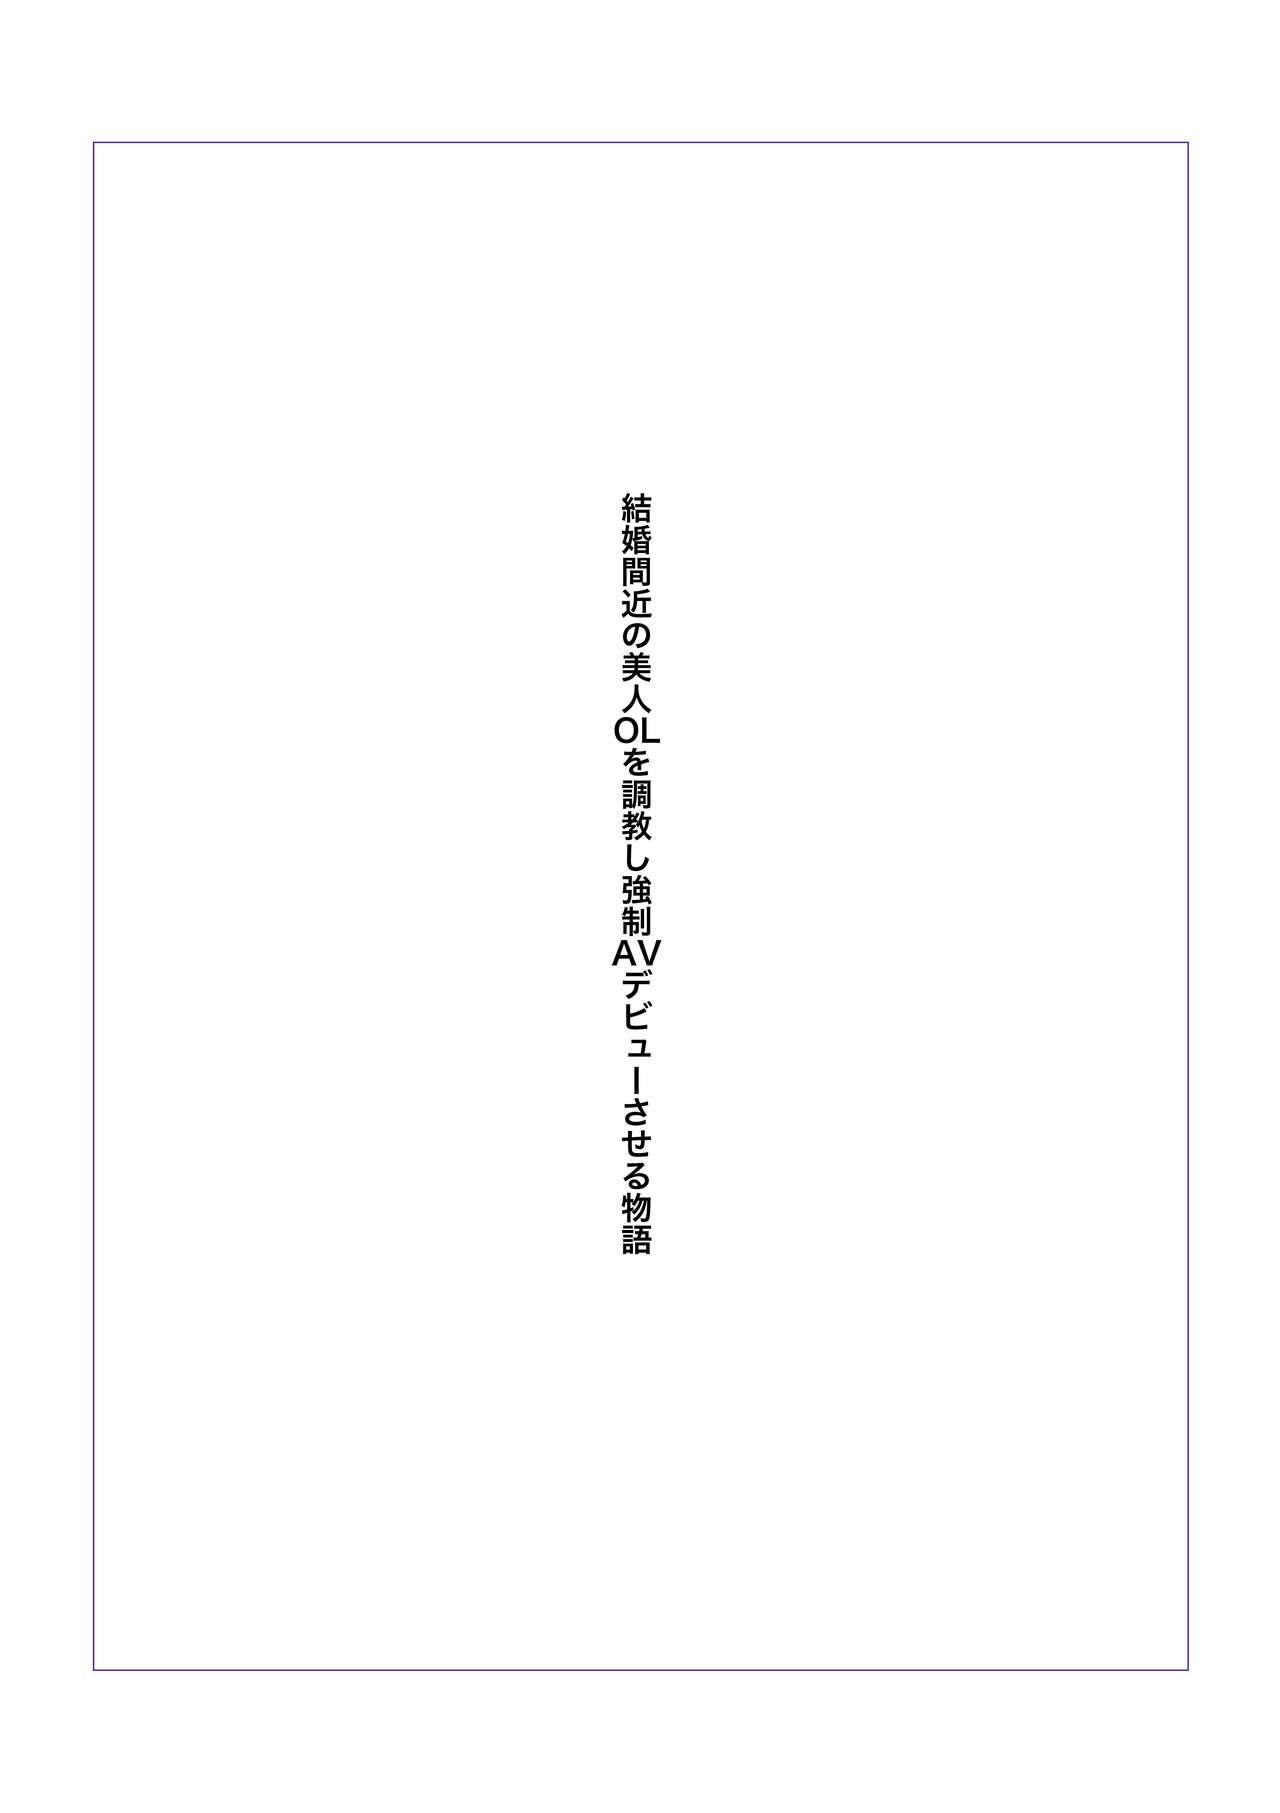 Lima Kekkon Madjika no Bijin OL o Kyōsei AV Debyū sa seru Monogatari HD - Page 2